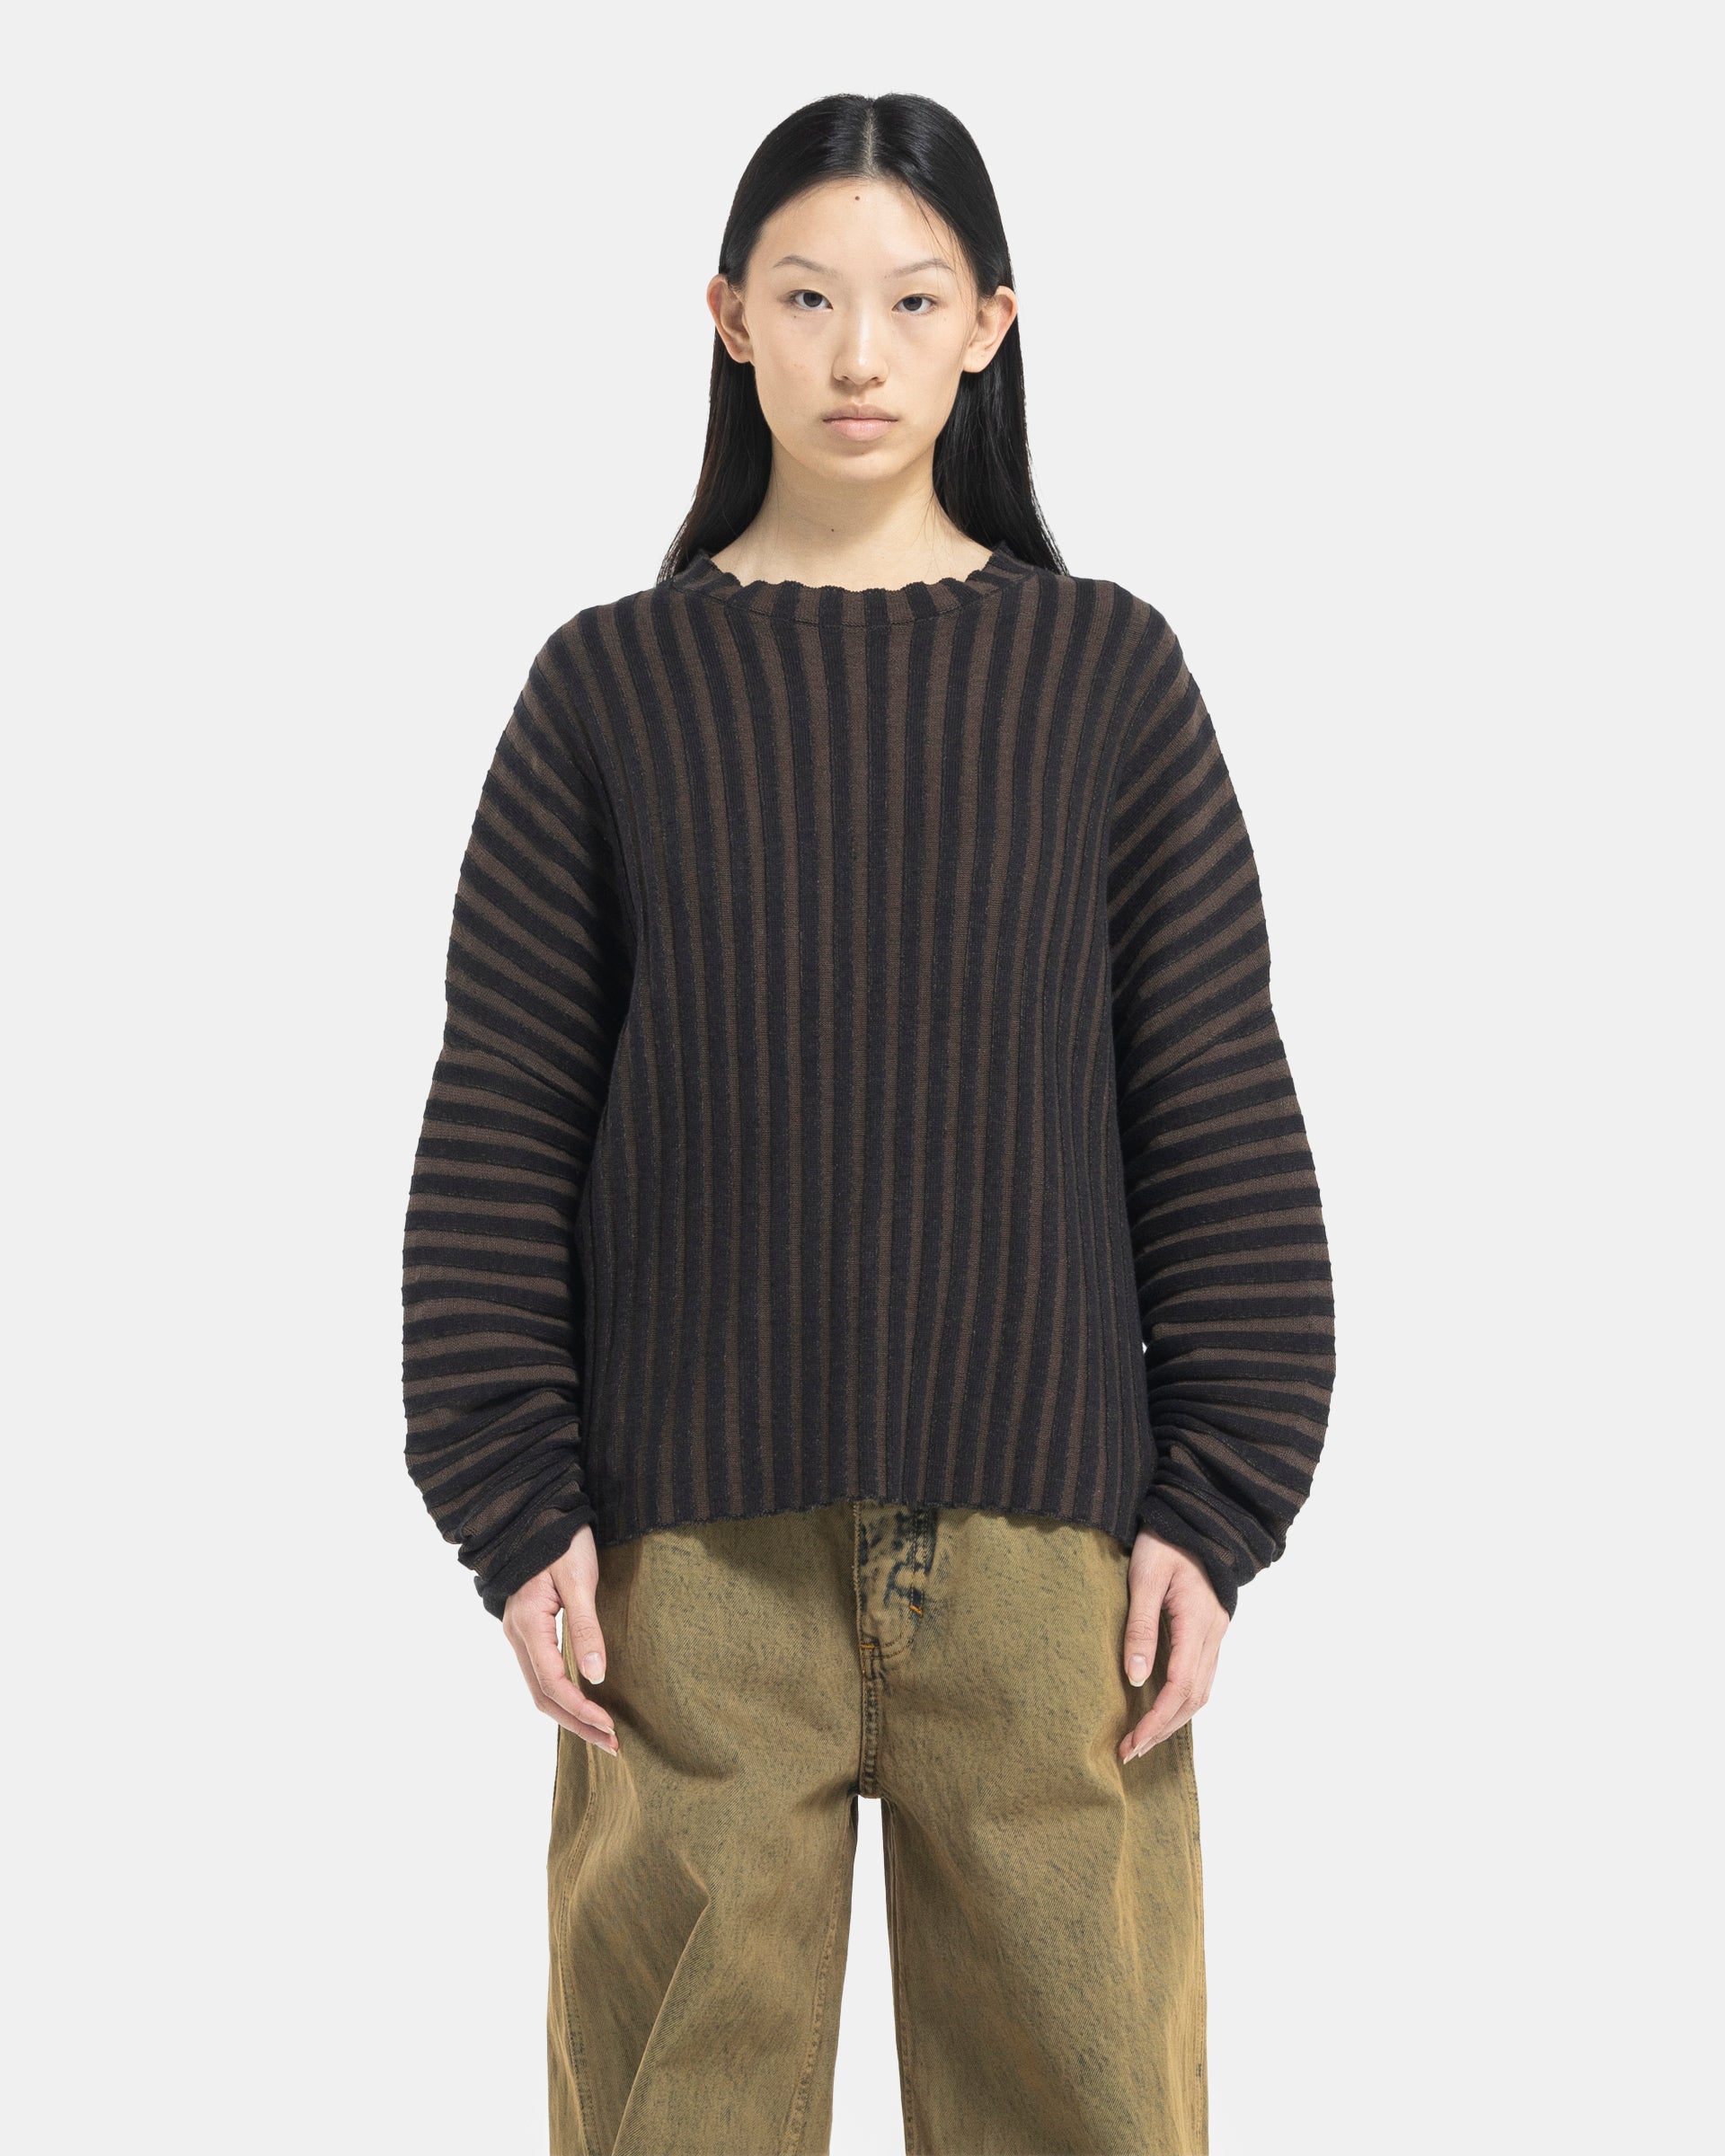 Model wearing Eckhaus Latta Designer Wool Brown Sweater